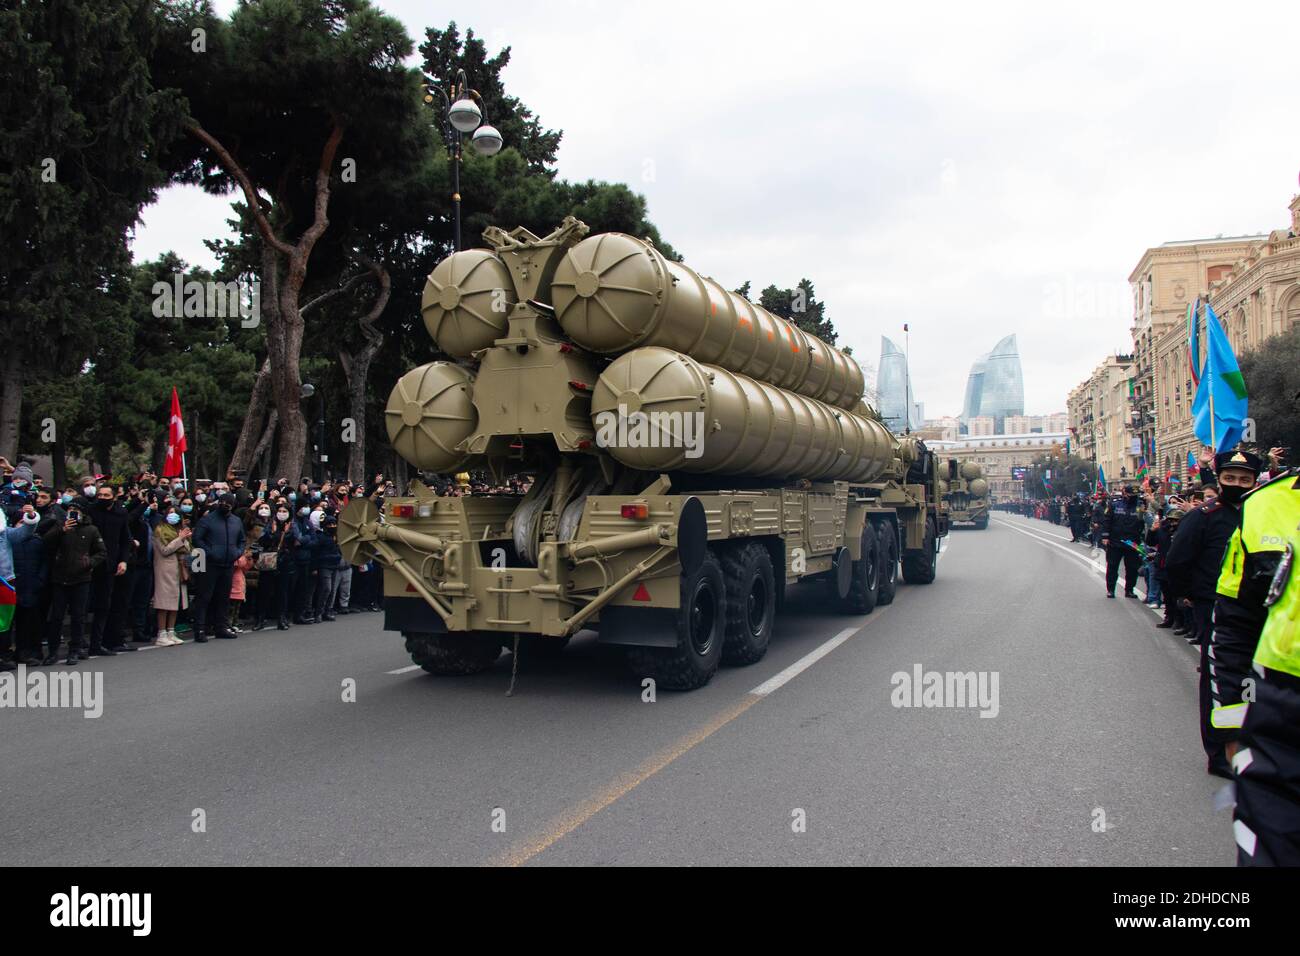 I sistemi missilistici russi a lungo raggio superficie-aria S-300 o NATO che riportano il nome SA-10 Grumble. Vittoria a Baku - Azerbaigian: 10 dicembre 2020. Foto Stock